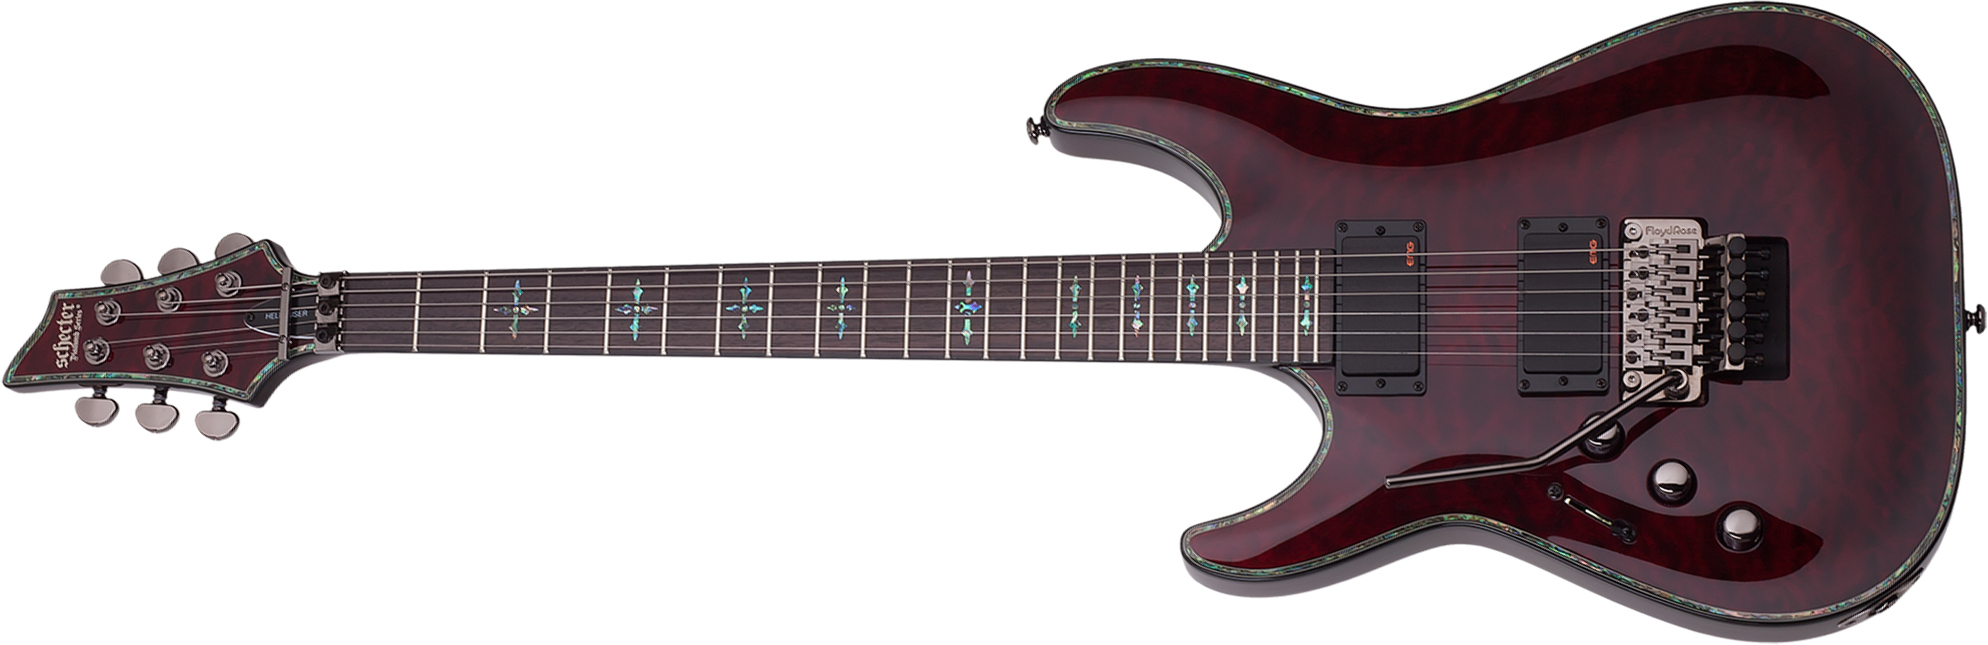 Schecter C-1 Fr Hellraiser Lh Gaucher 2h Emg Rw - Black Cherry - Linkshandige elektrische gitaar - Main picture